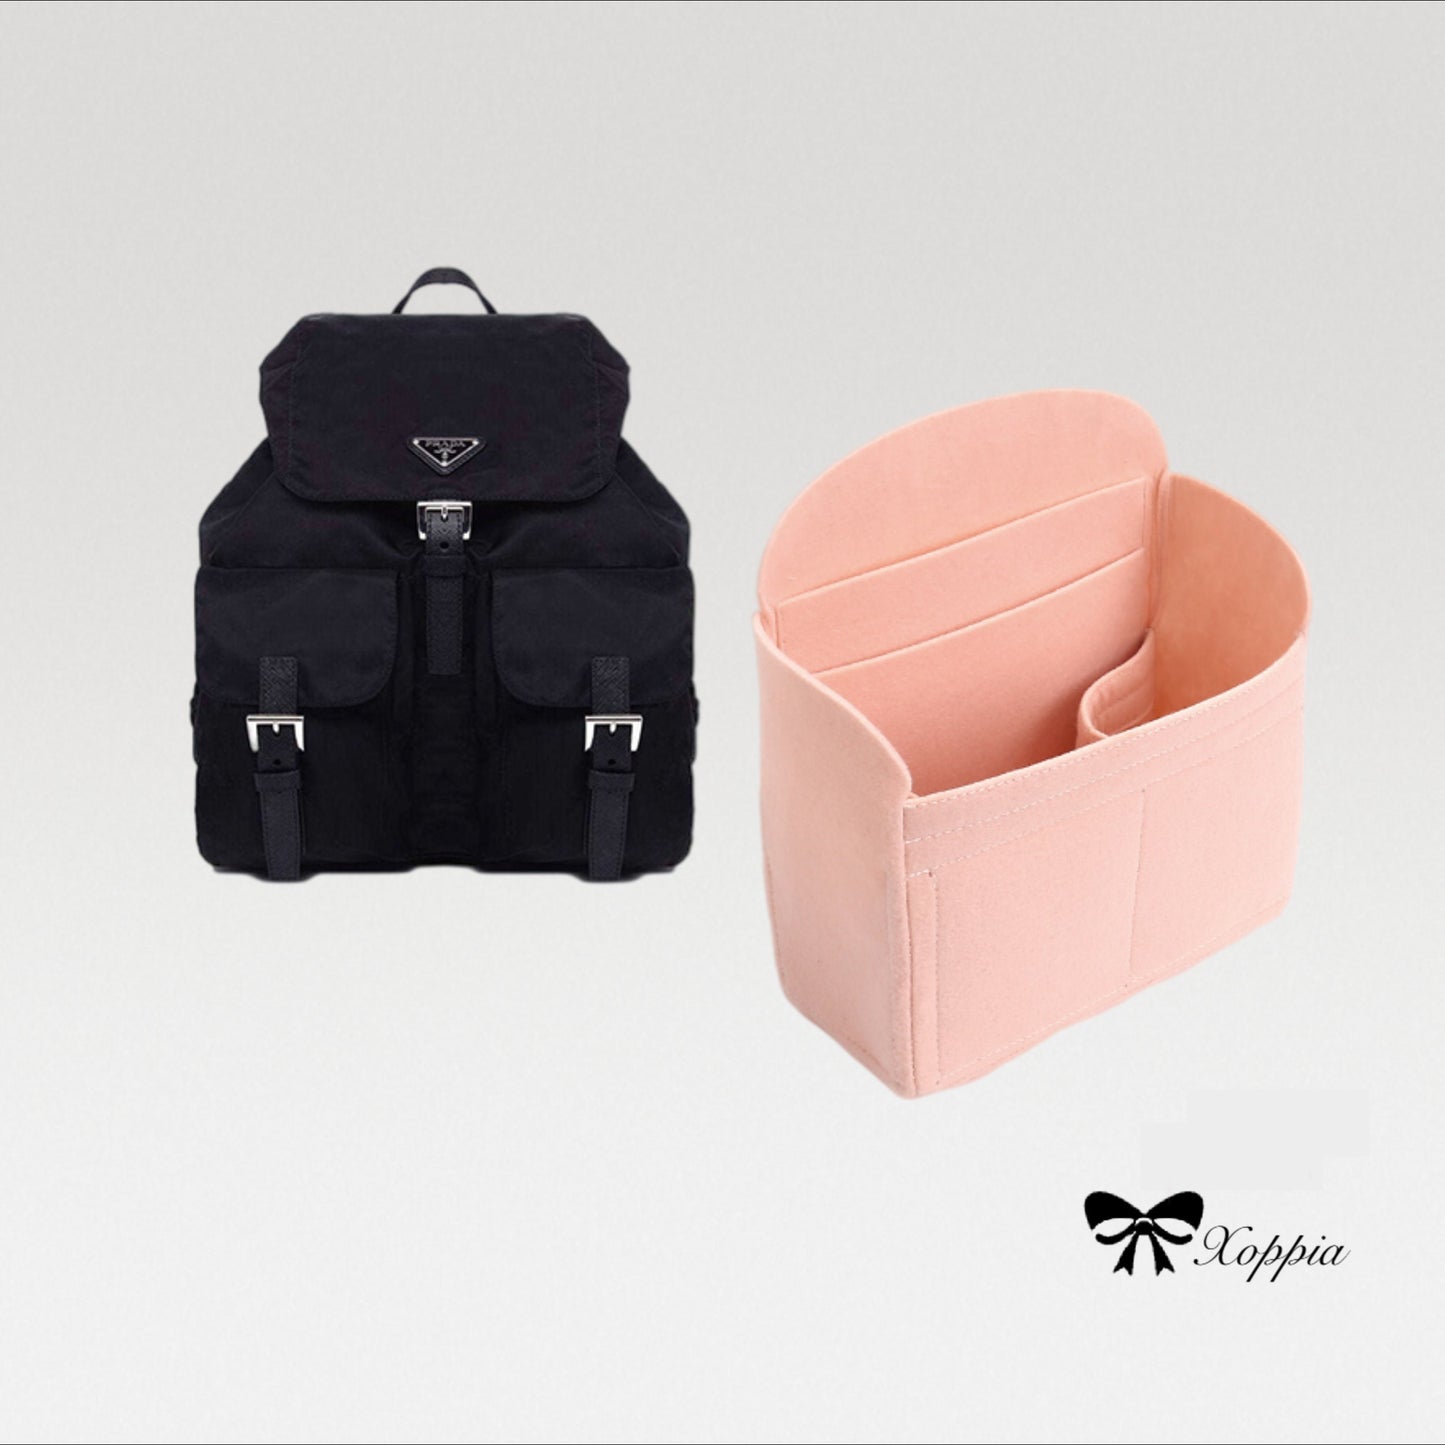 Bag Organizer For Nylon BackpackBackpacks. Bag Insert For Backpack Bag.